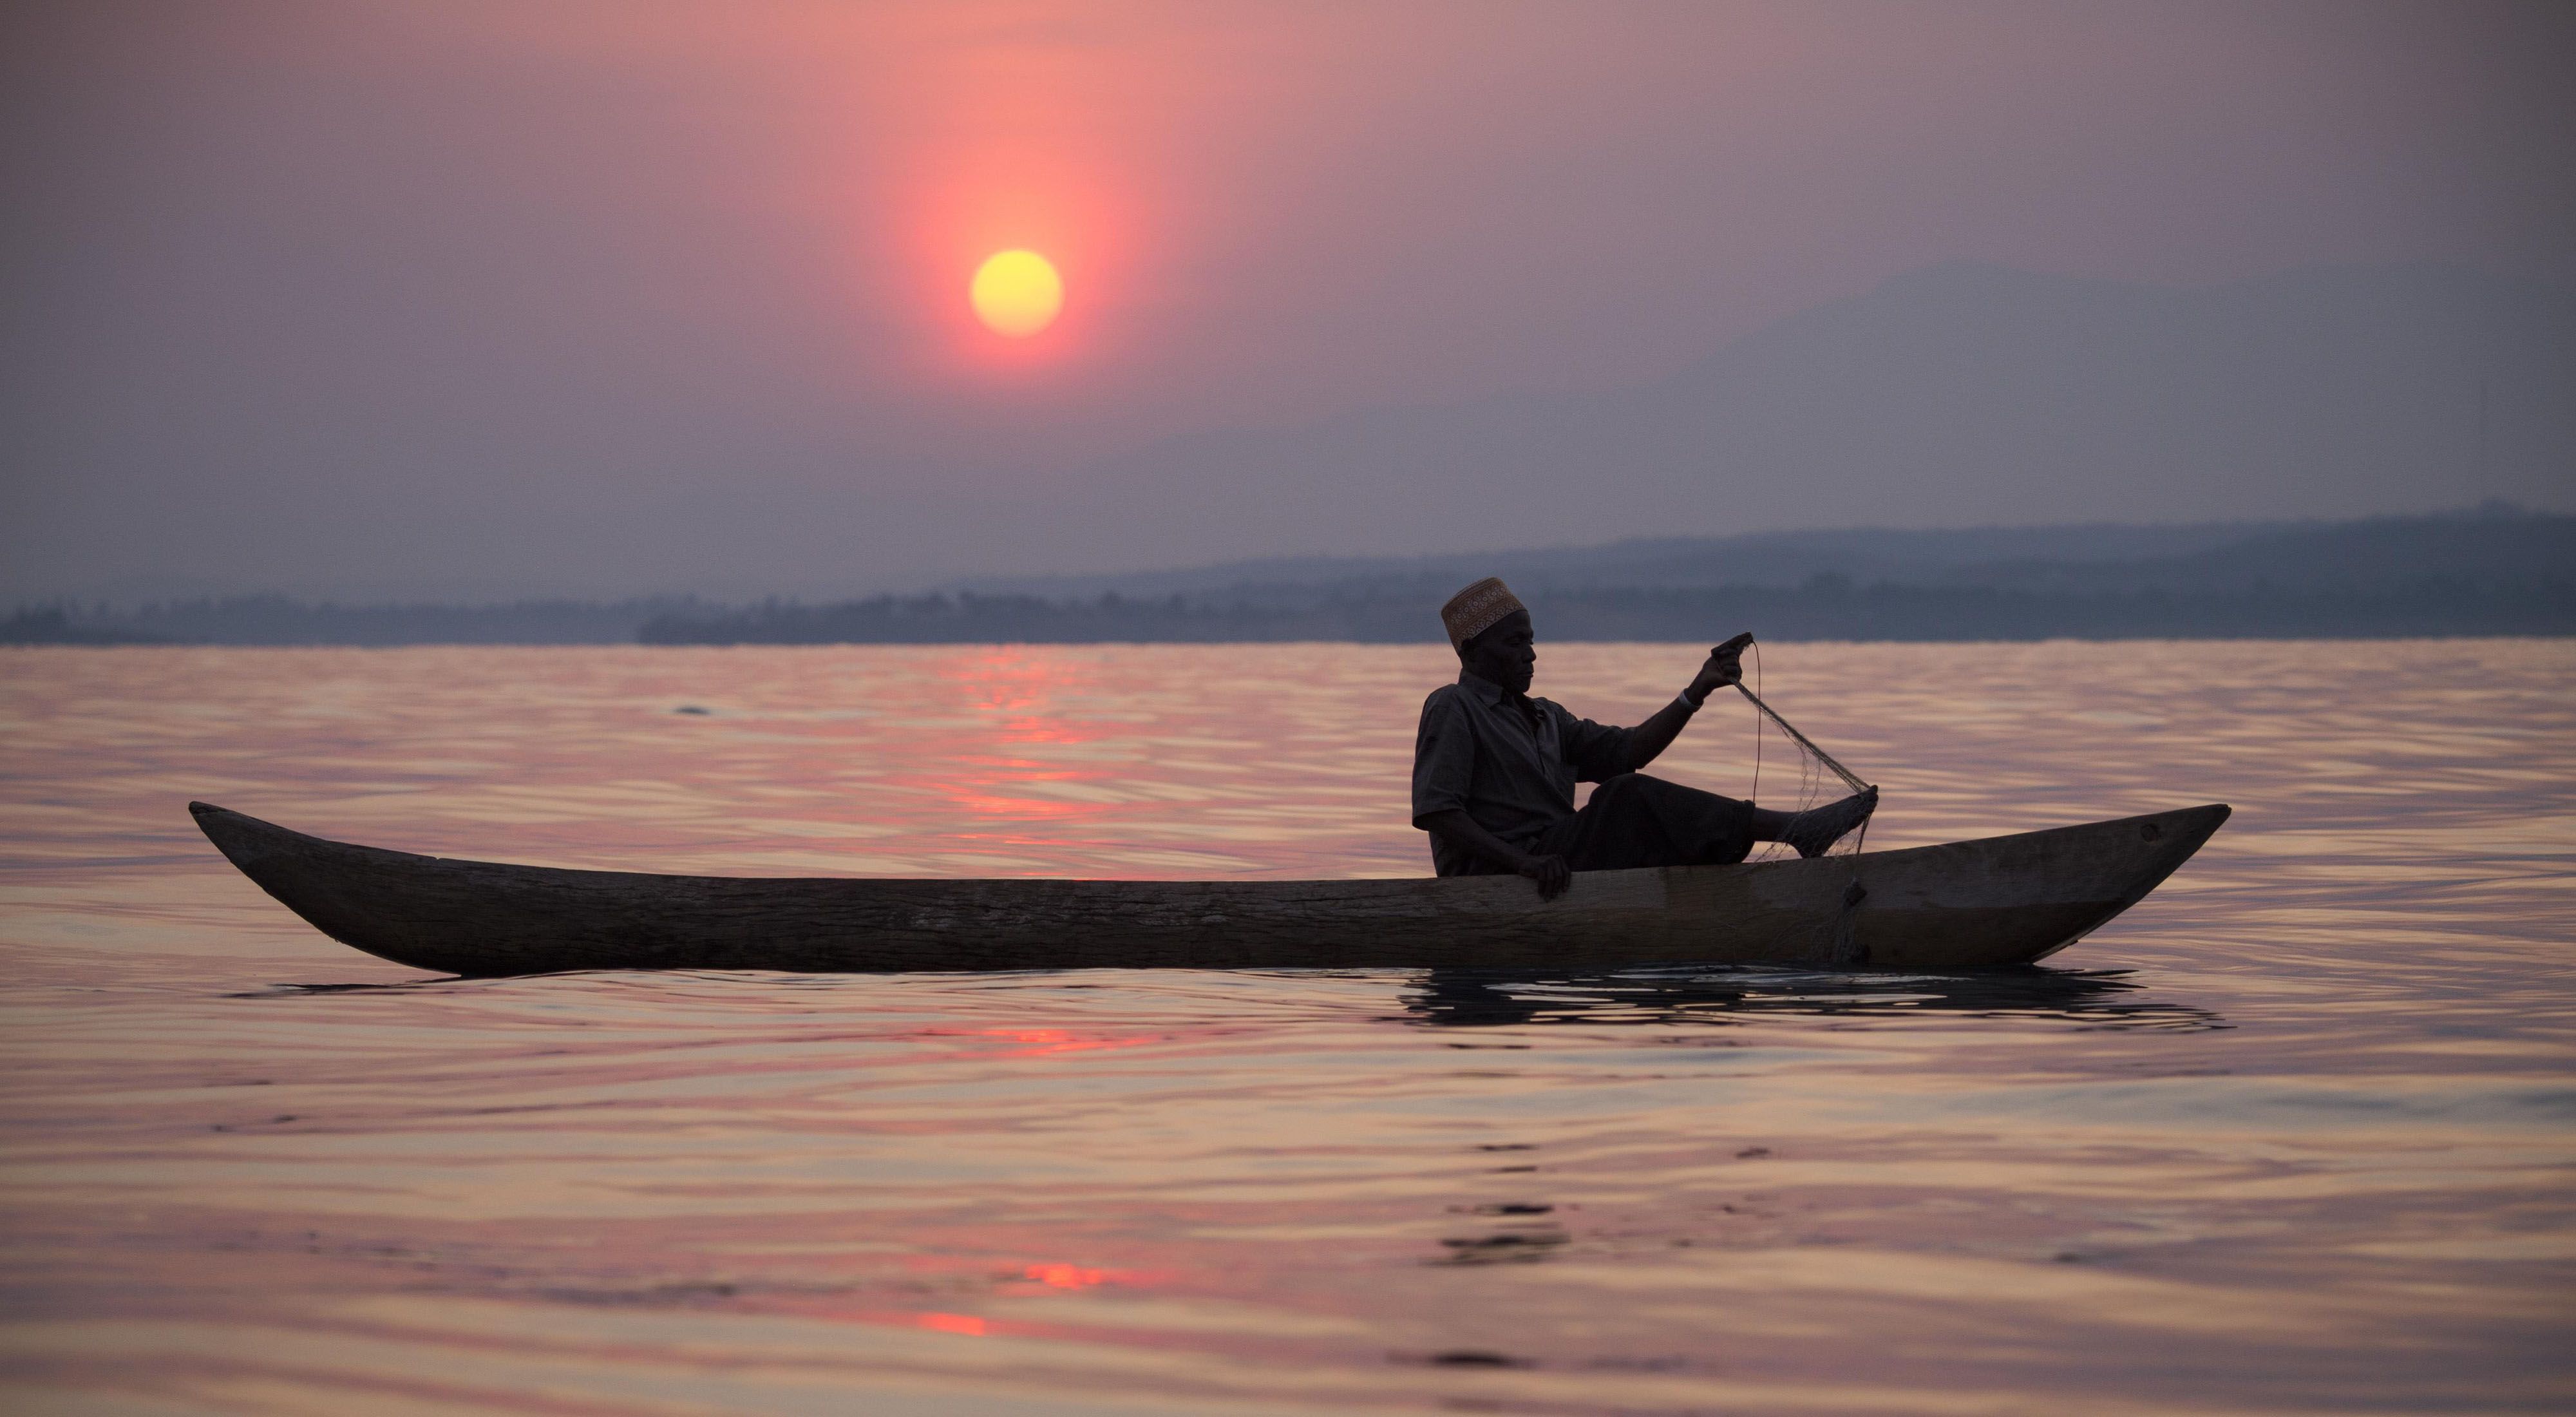 Fisherman in a canoe on Lake Tanganyika at sunset.